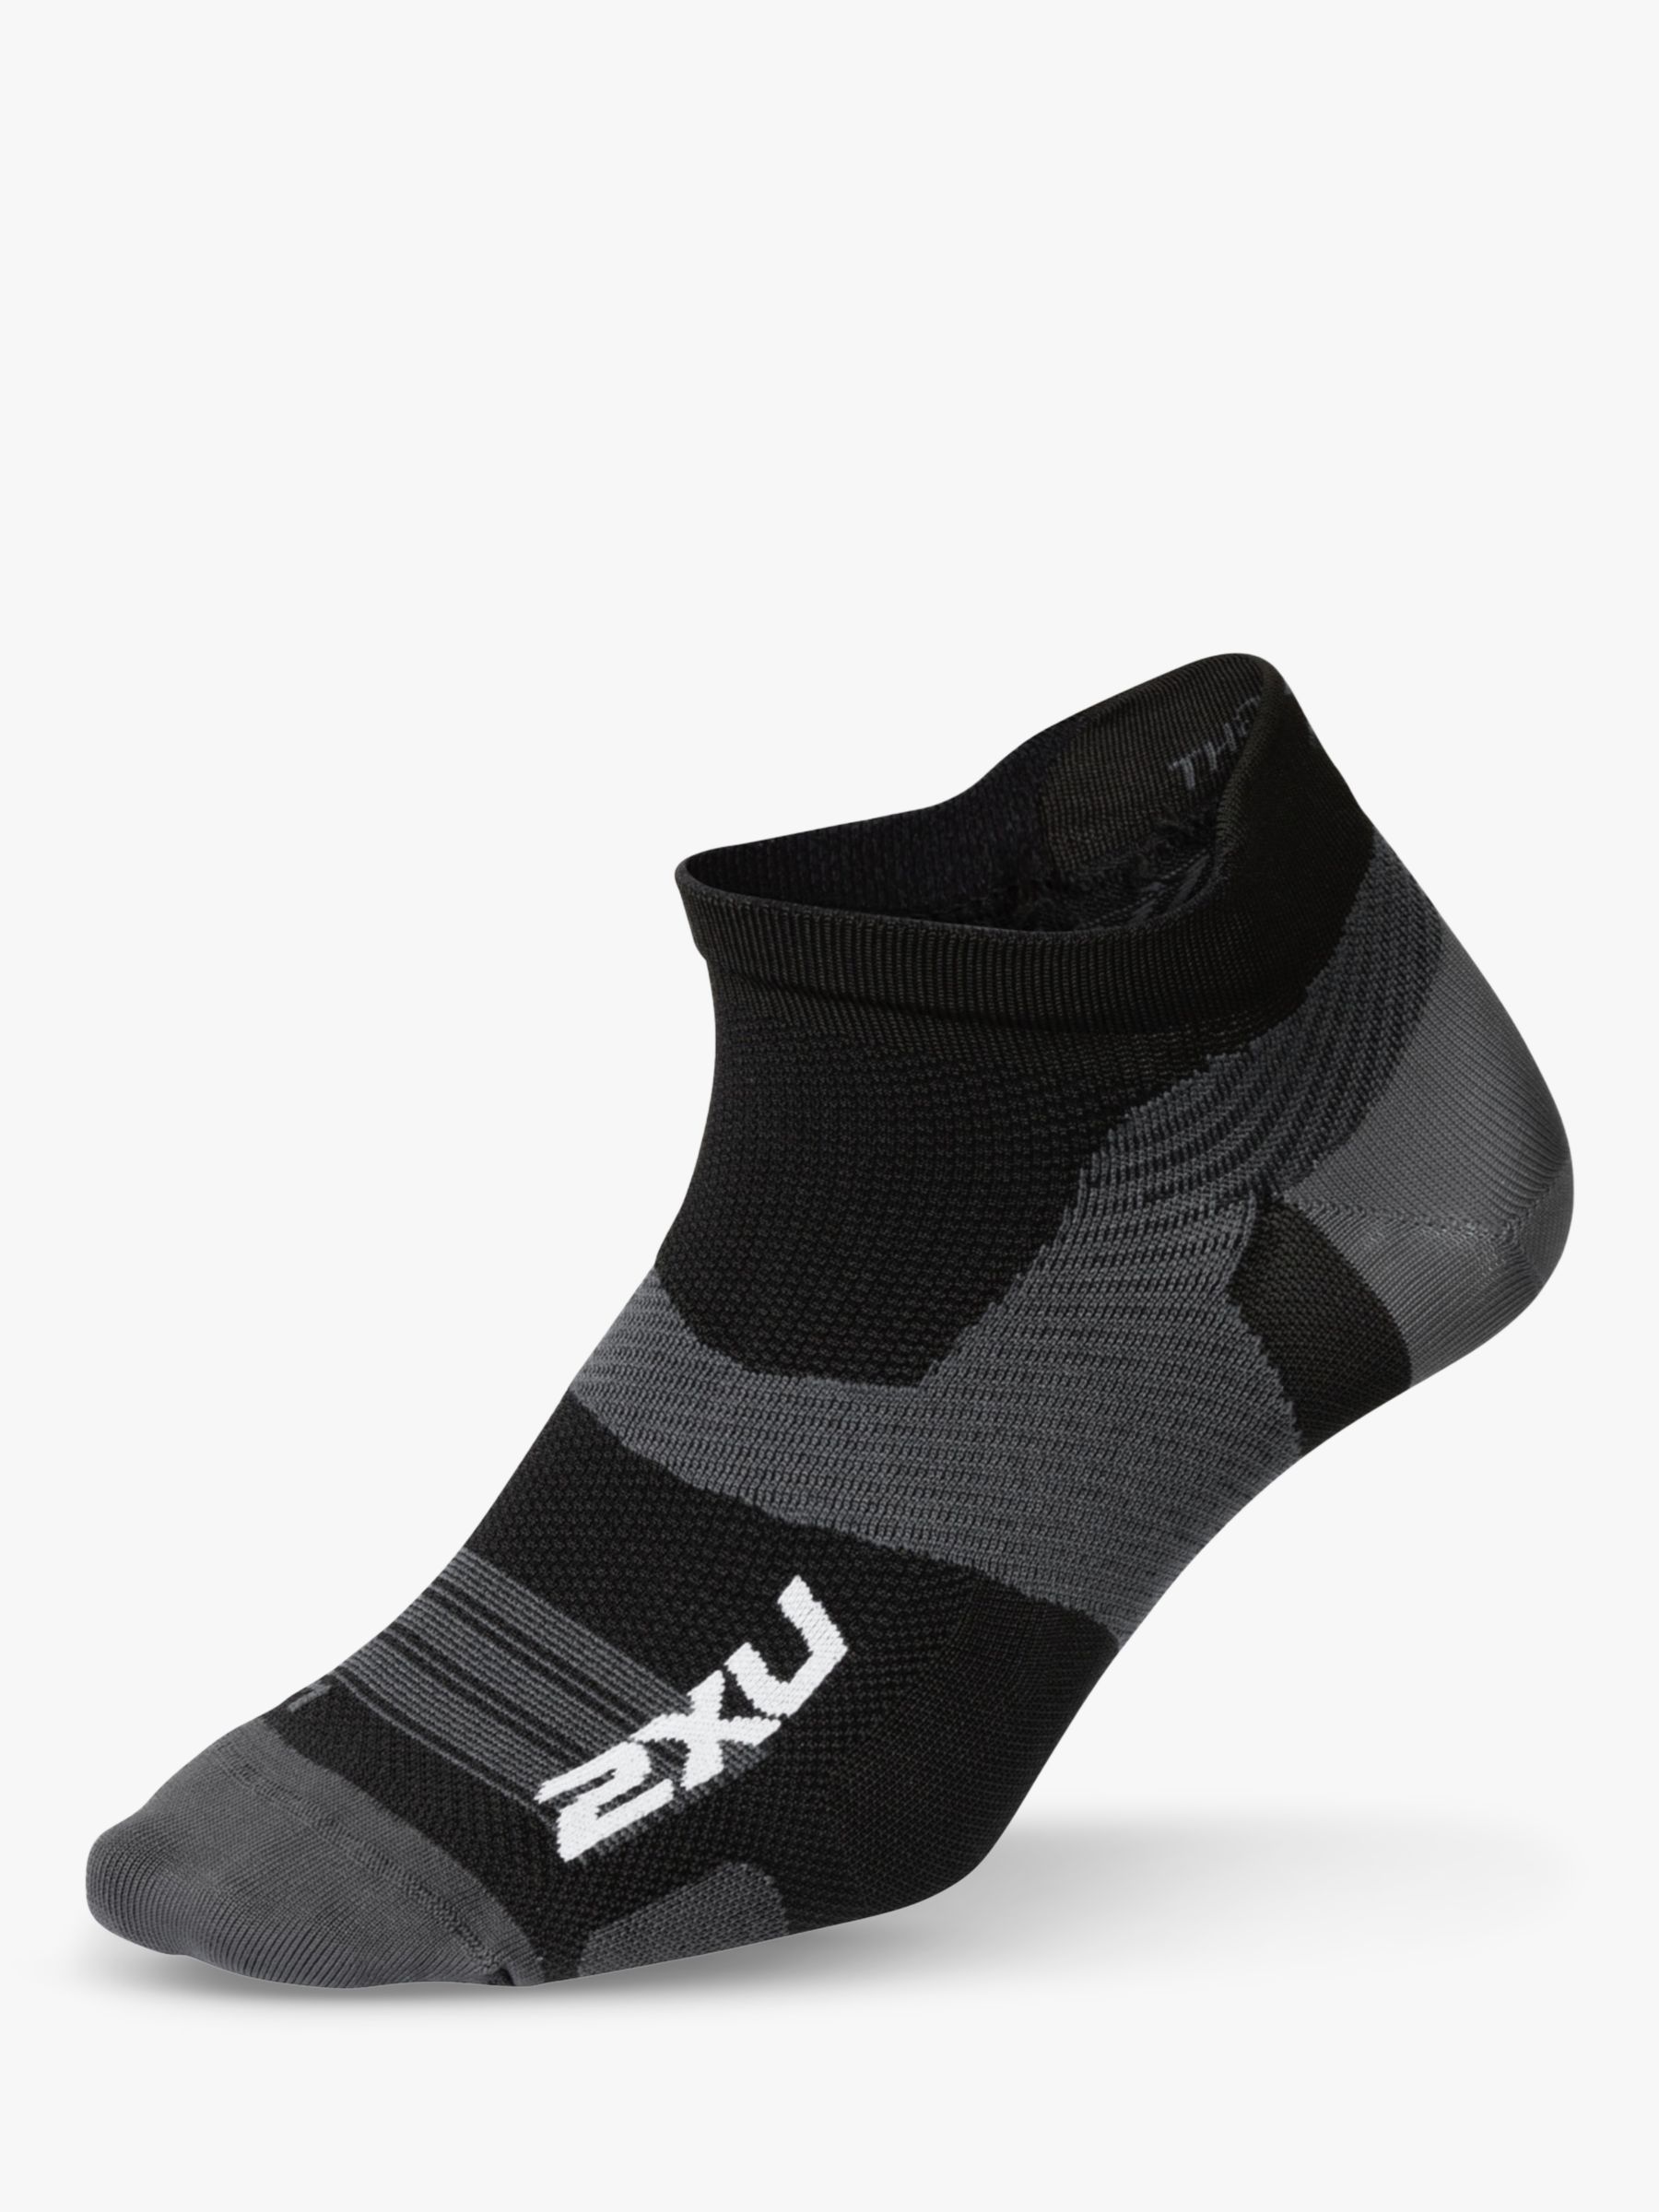 2XU Vectr Compression Socks, Black, S